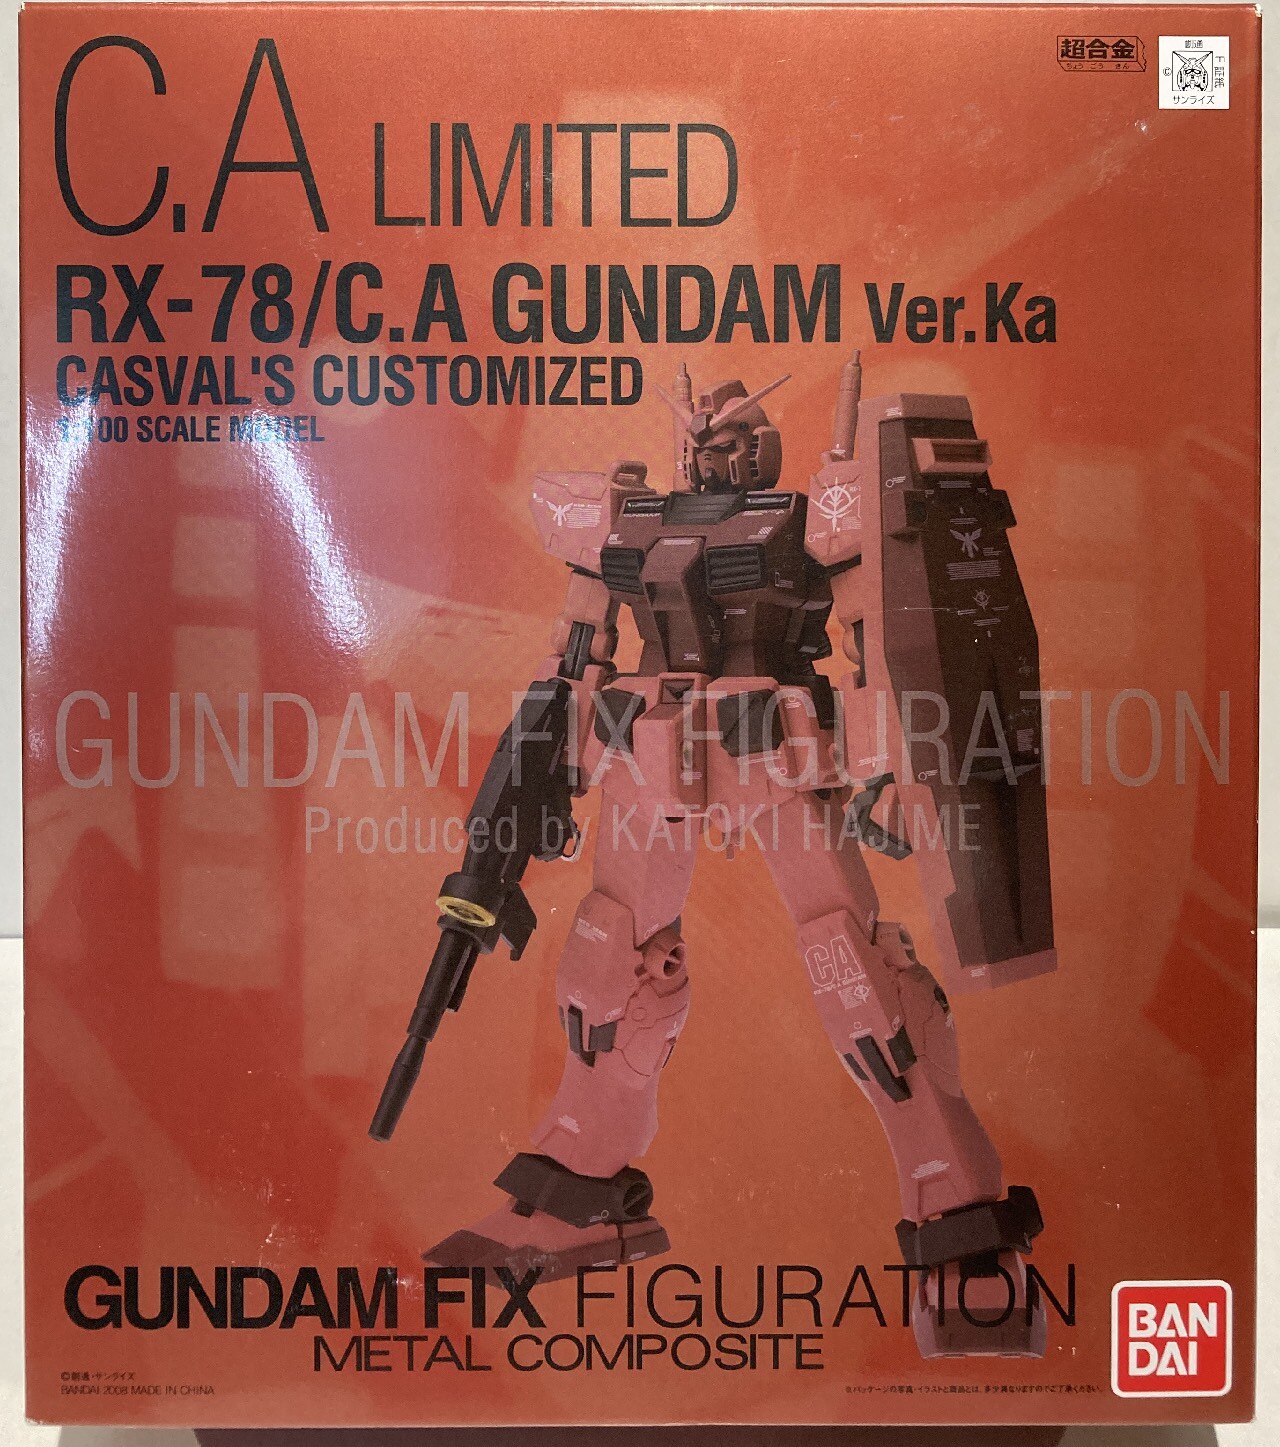 16934円 絶対一番安い GUNDAM FIX FIGURATION METAL COMPOSITE LIMITED RX-78 C.A Ver.Ka